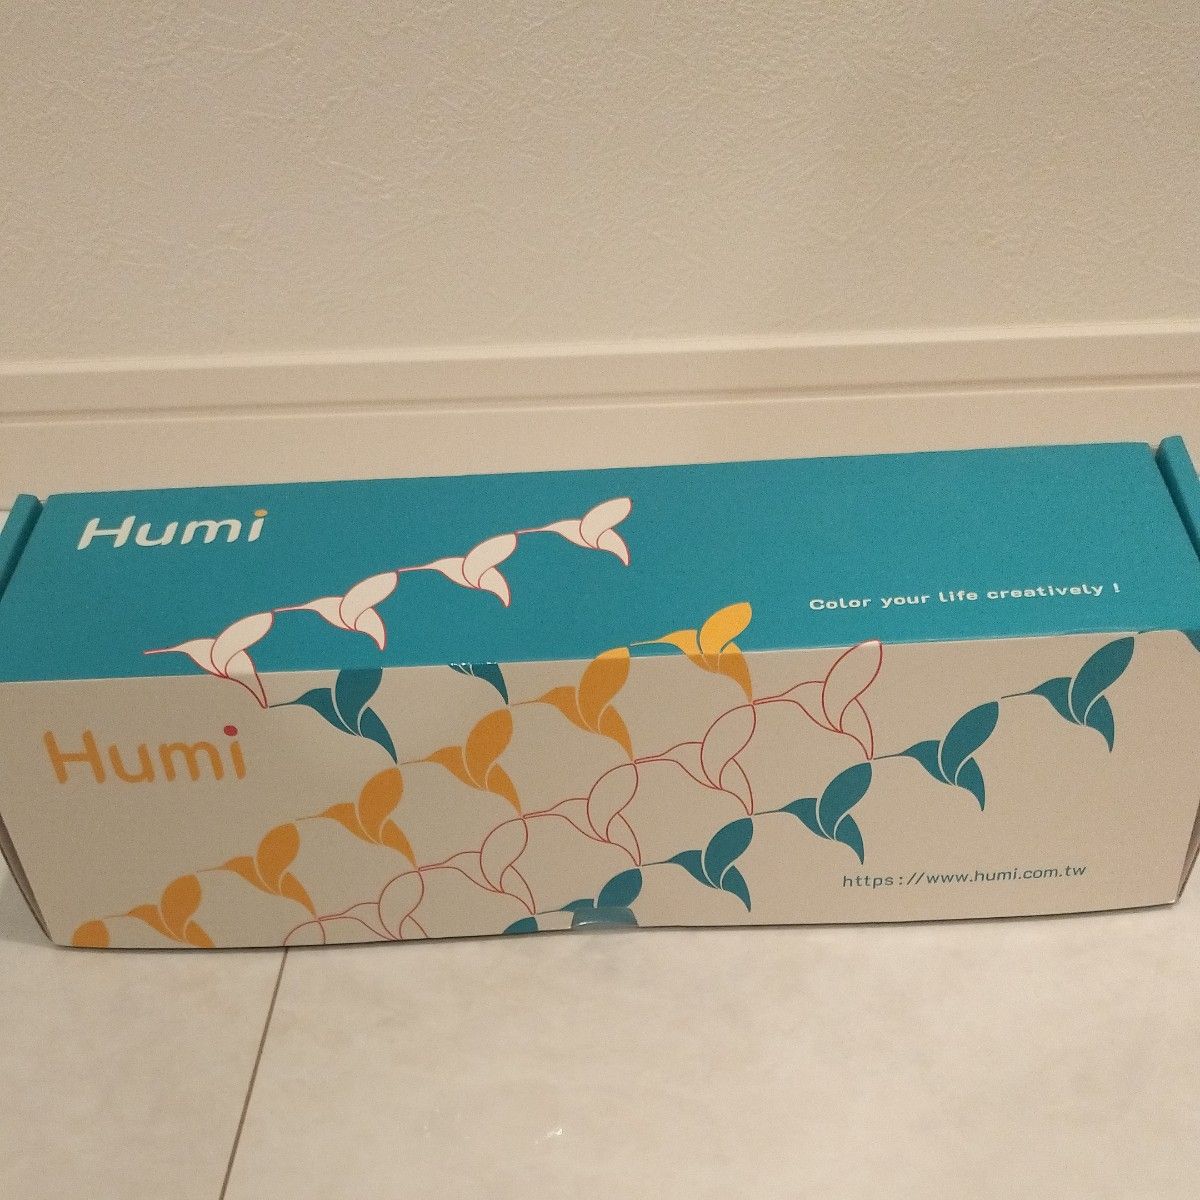 【未使用未開封】Humi Mac OS ショートカットマウスパッド テーブルマット 特殊六角形滑り止めラバーベース ソフト